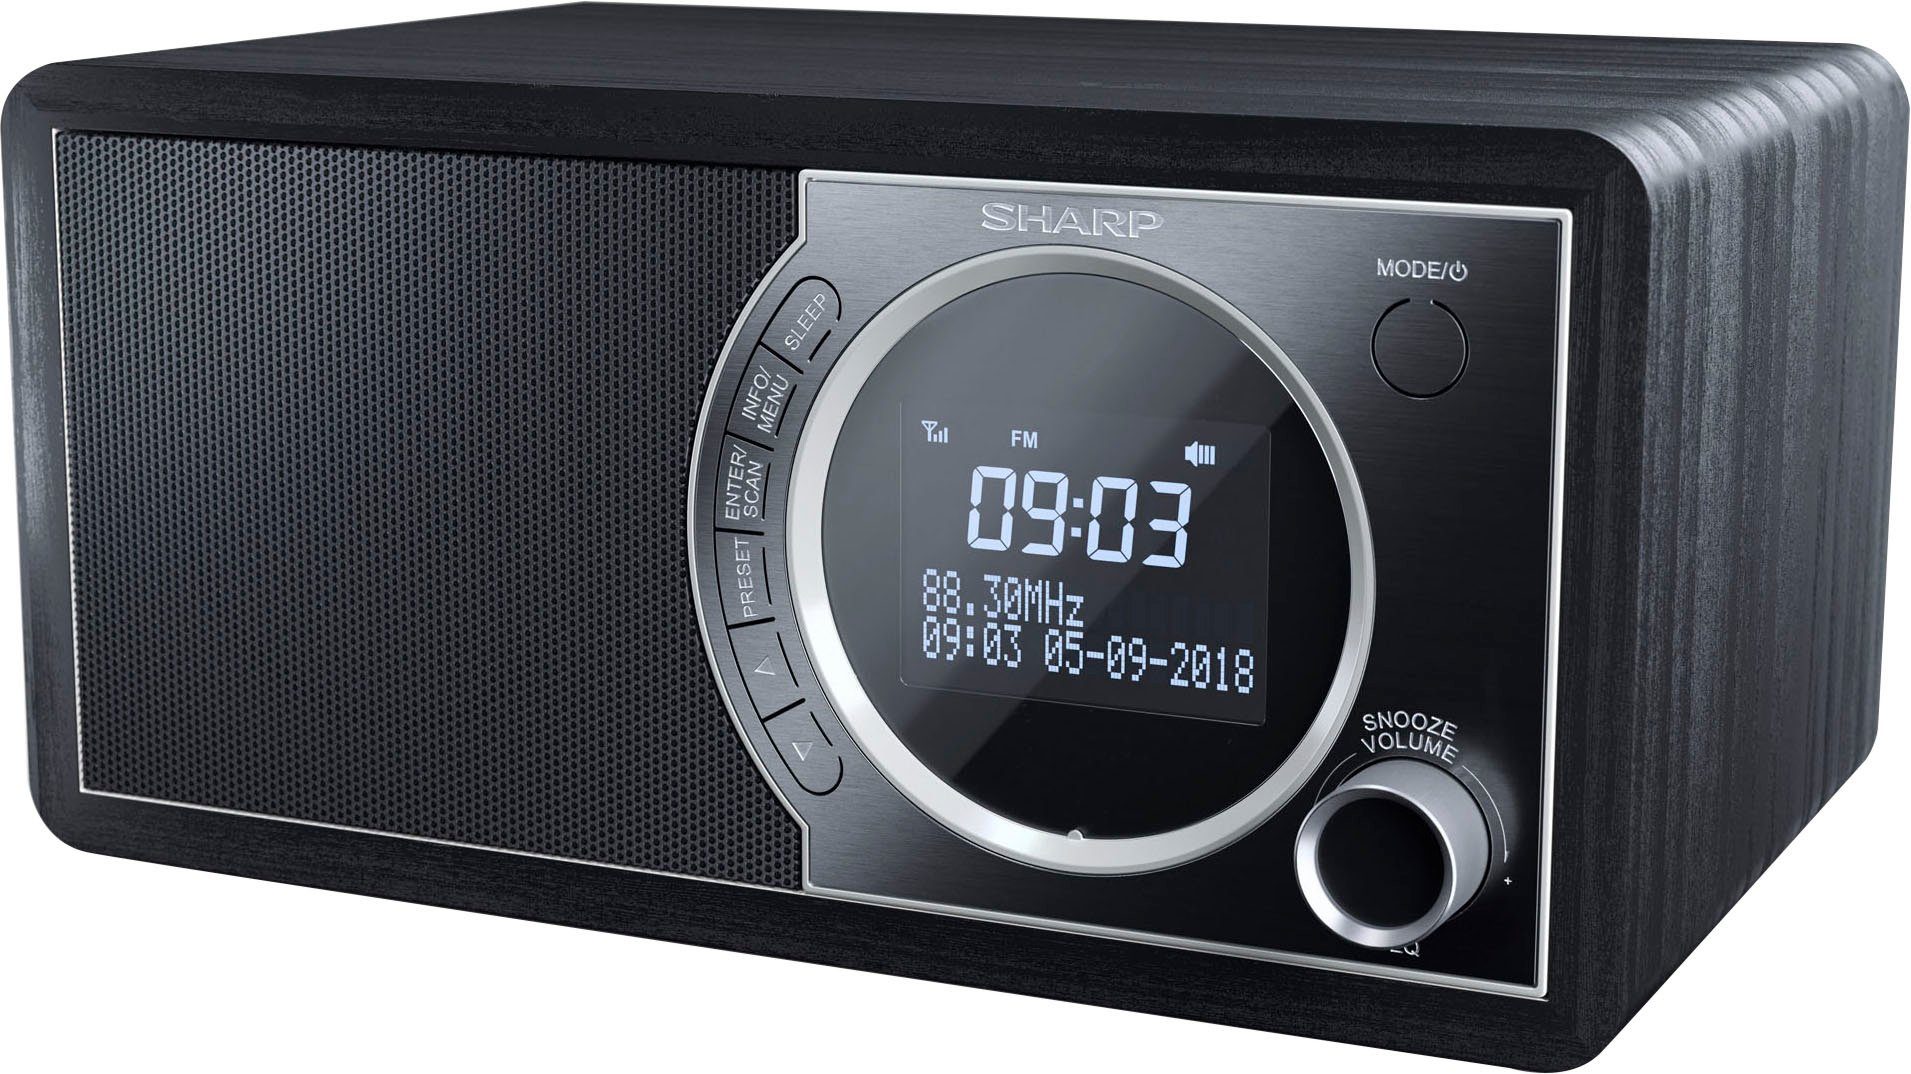 W) Digitalradio 6 mit DR-450 RDS, (DAB), schwarz FM-Tuner (DAB) (Automatische Senderverfolgung, Sharp Digitalradio